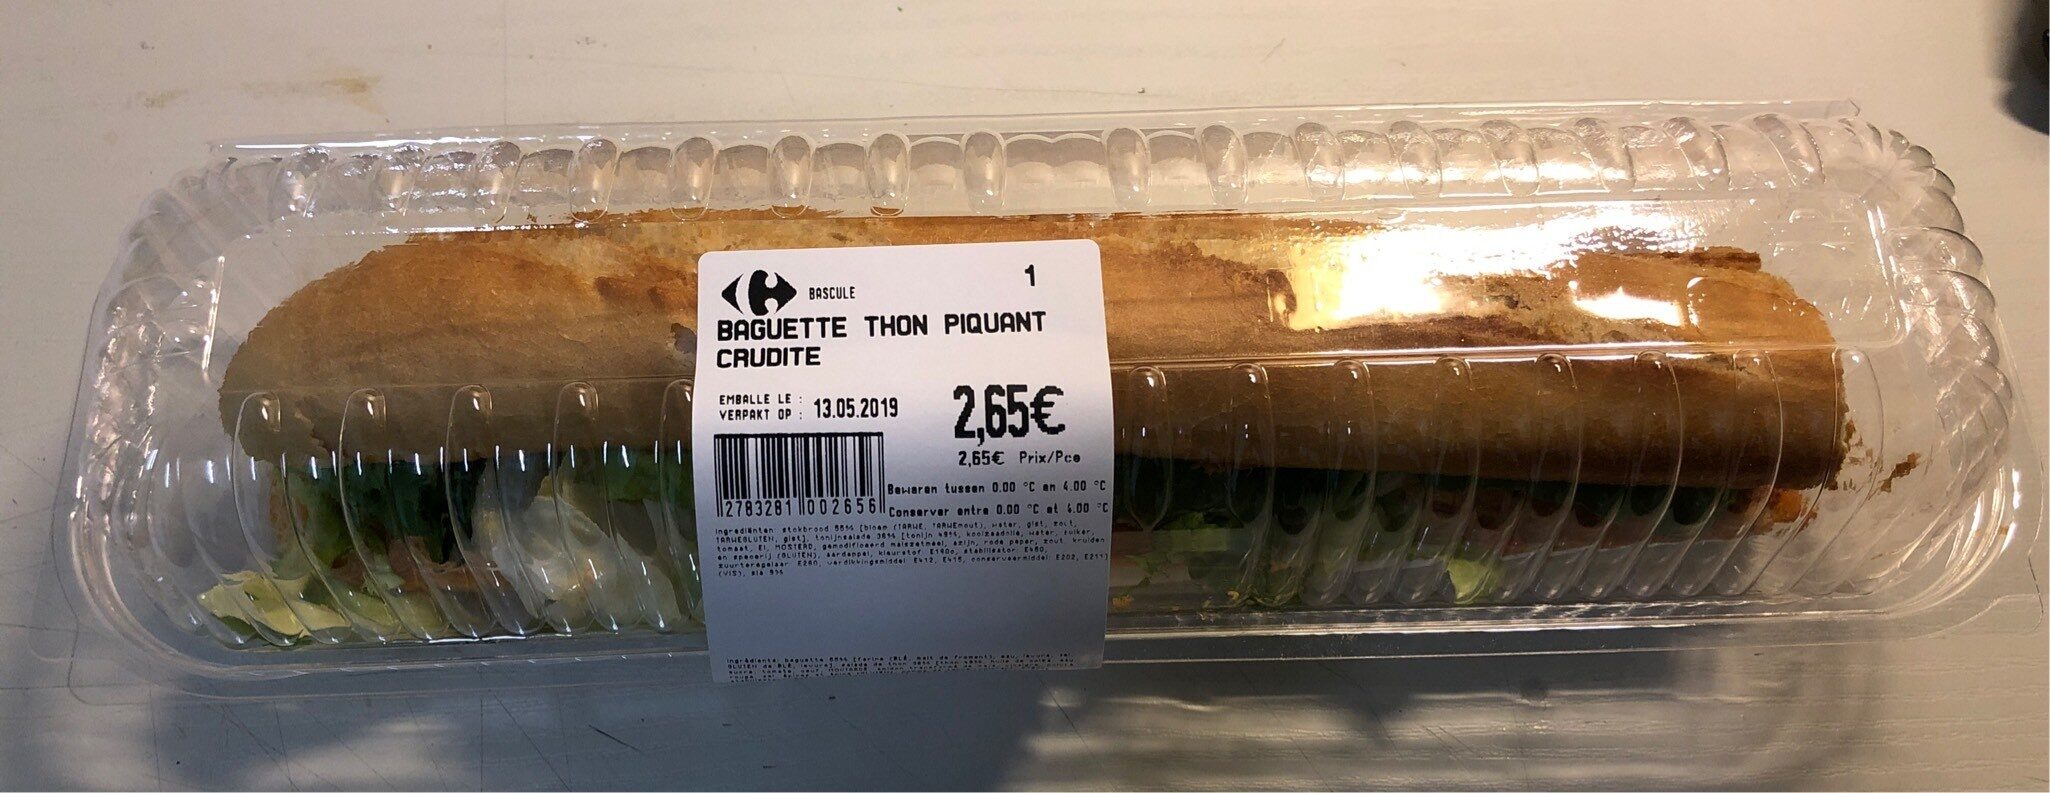 Baguette crudité - Product - fr